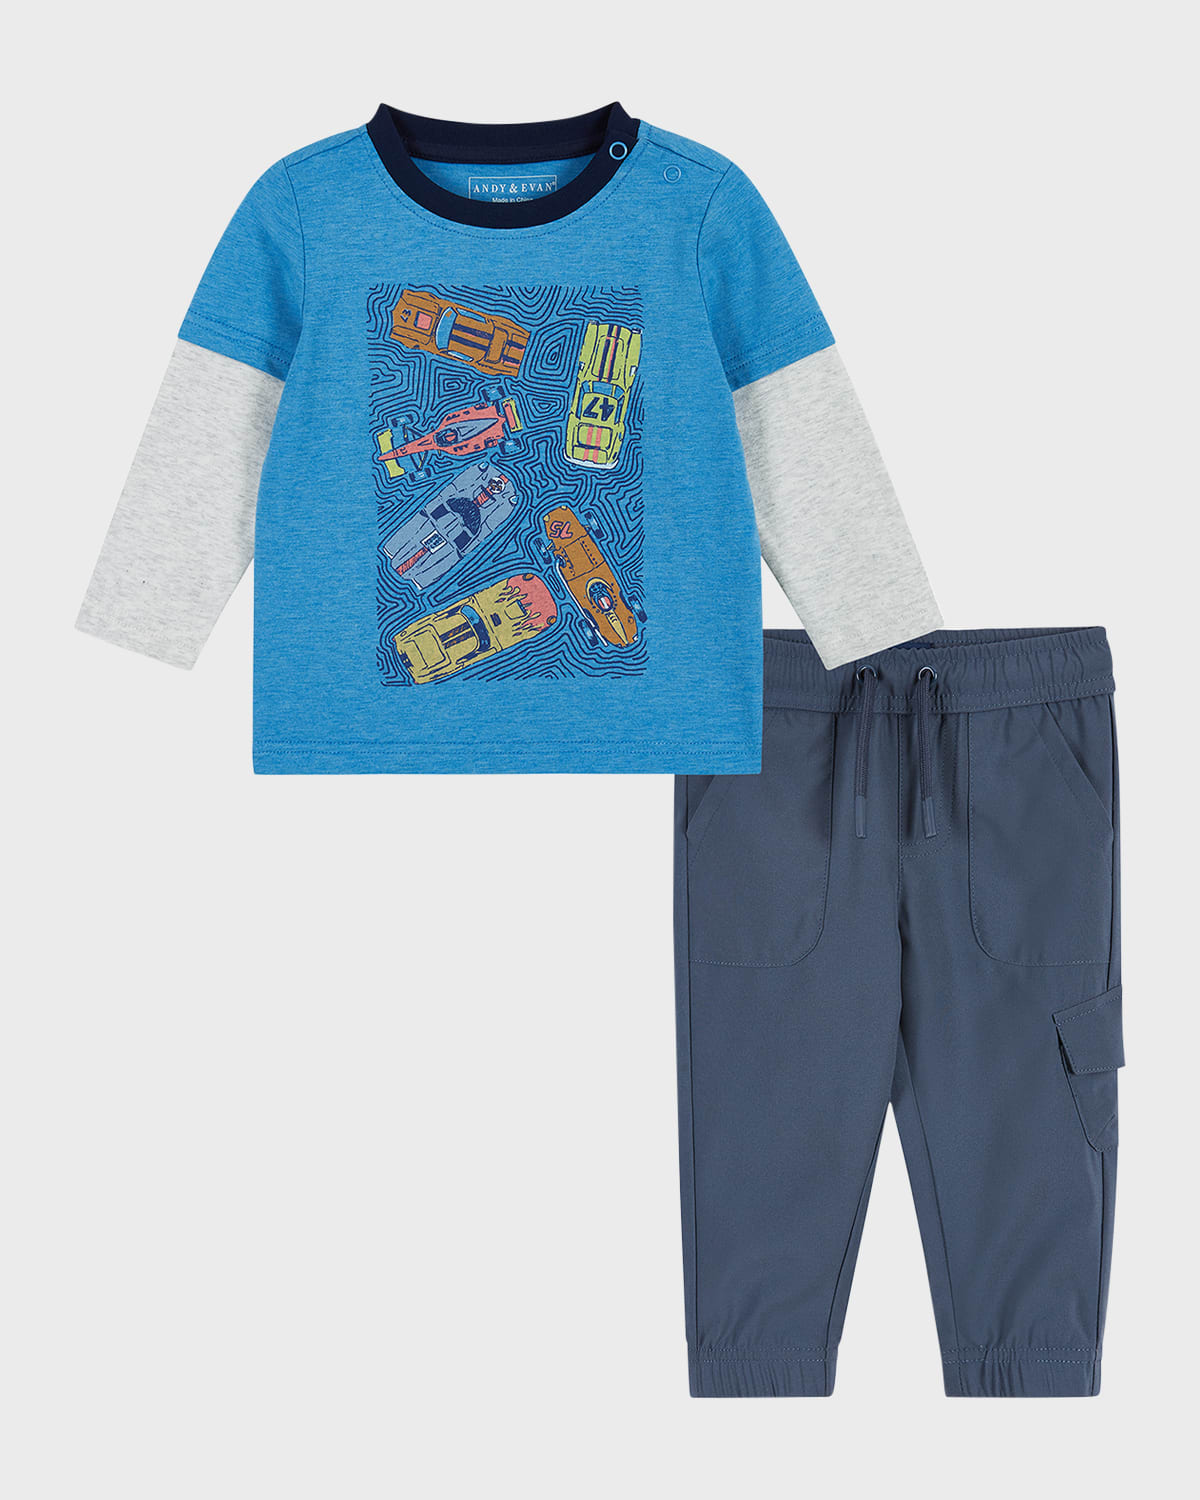 Andy & Evan Kids' Girl's Racecar-print Graphic T-shirt W/ Joggers Set In Racecar Aqua